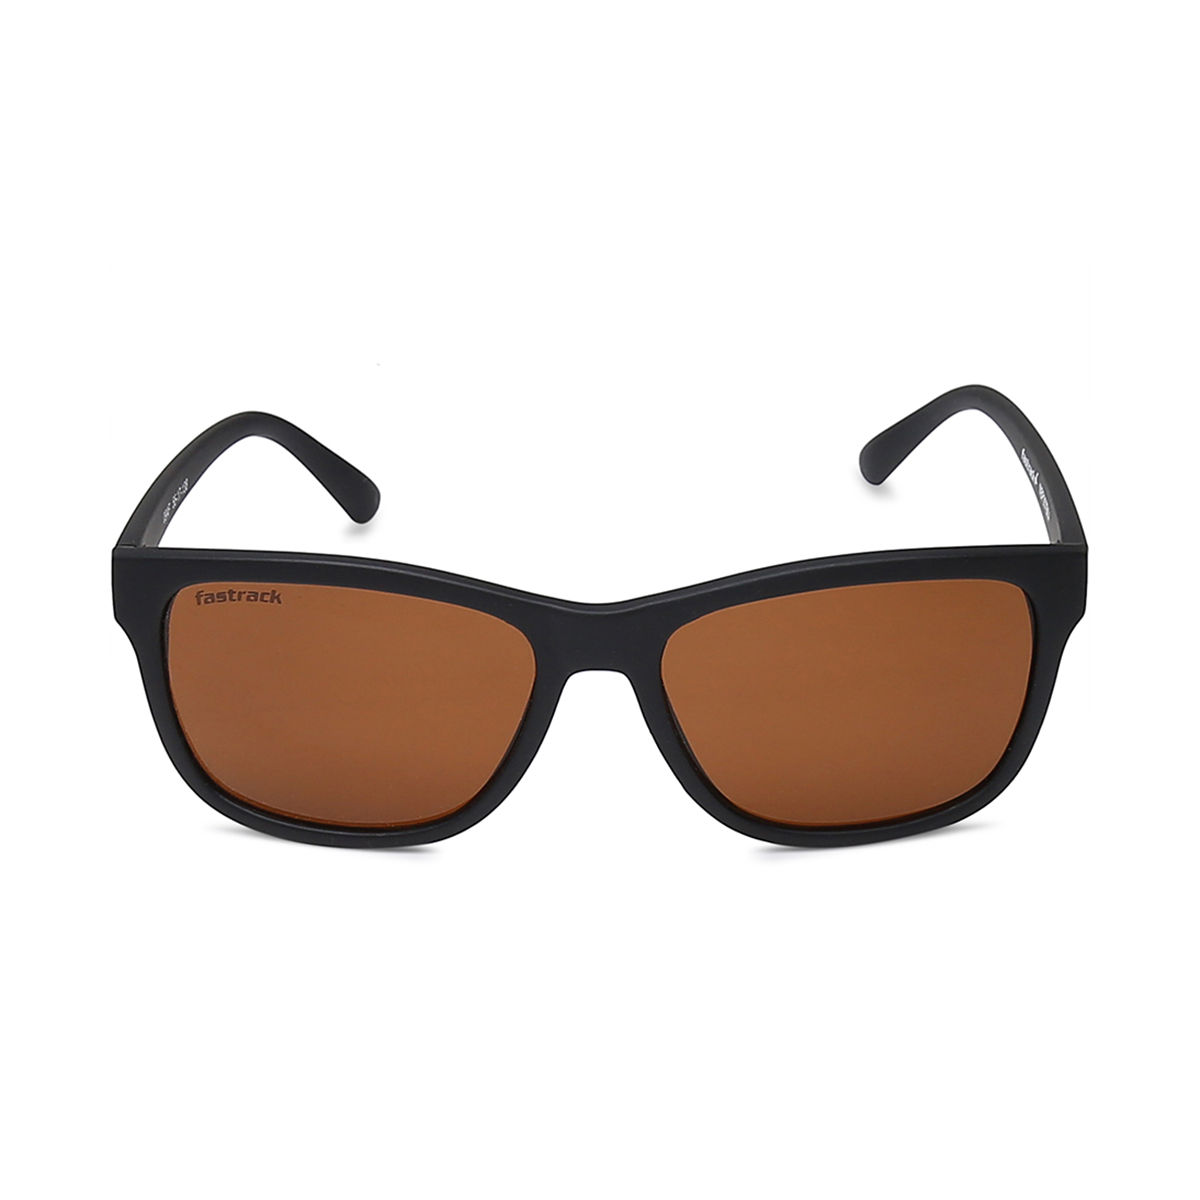 Buy Fastrack Men Square non polarization Sunglasses (Black_ S ) at Amazon.in